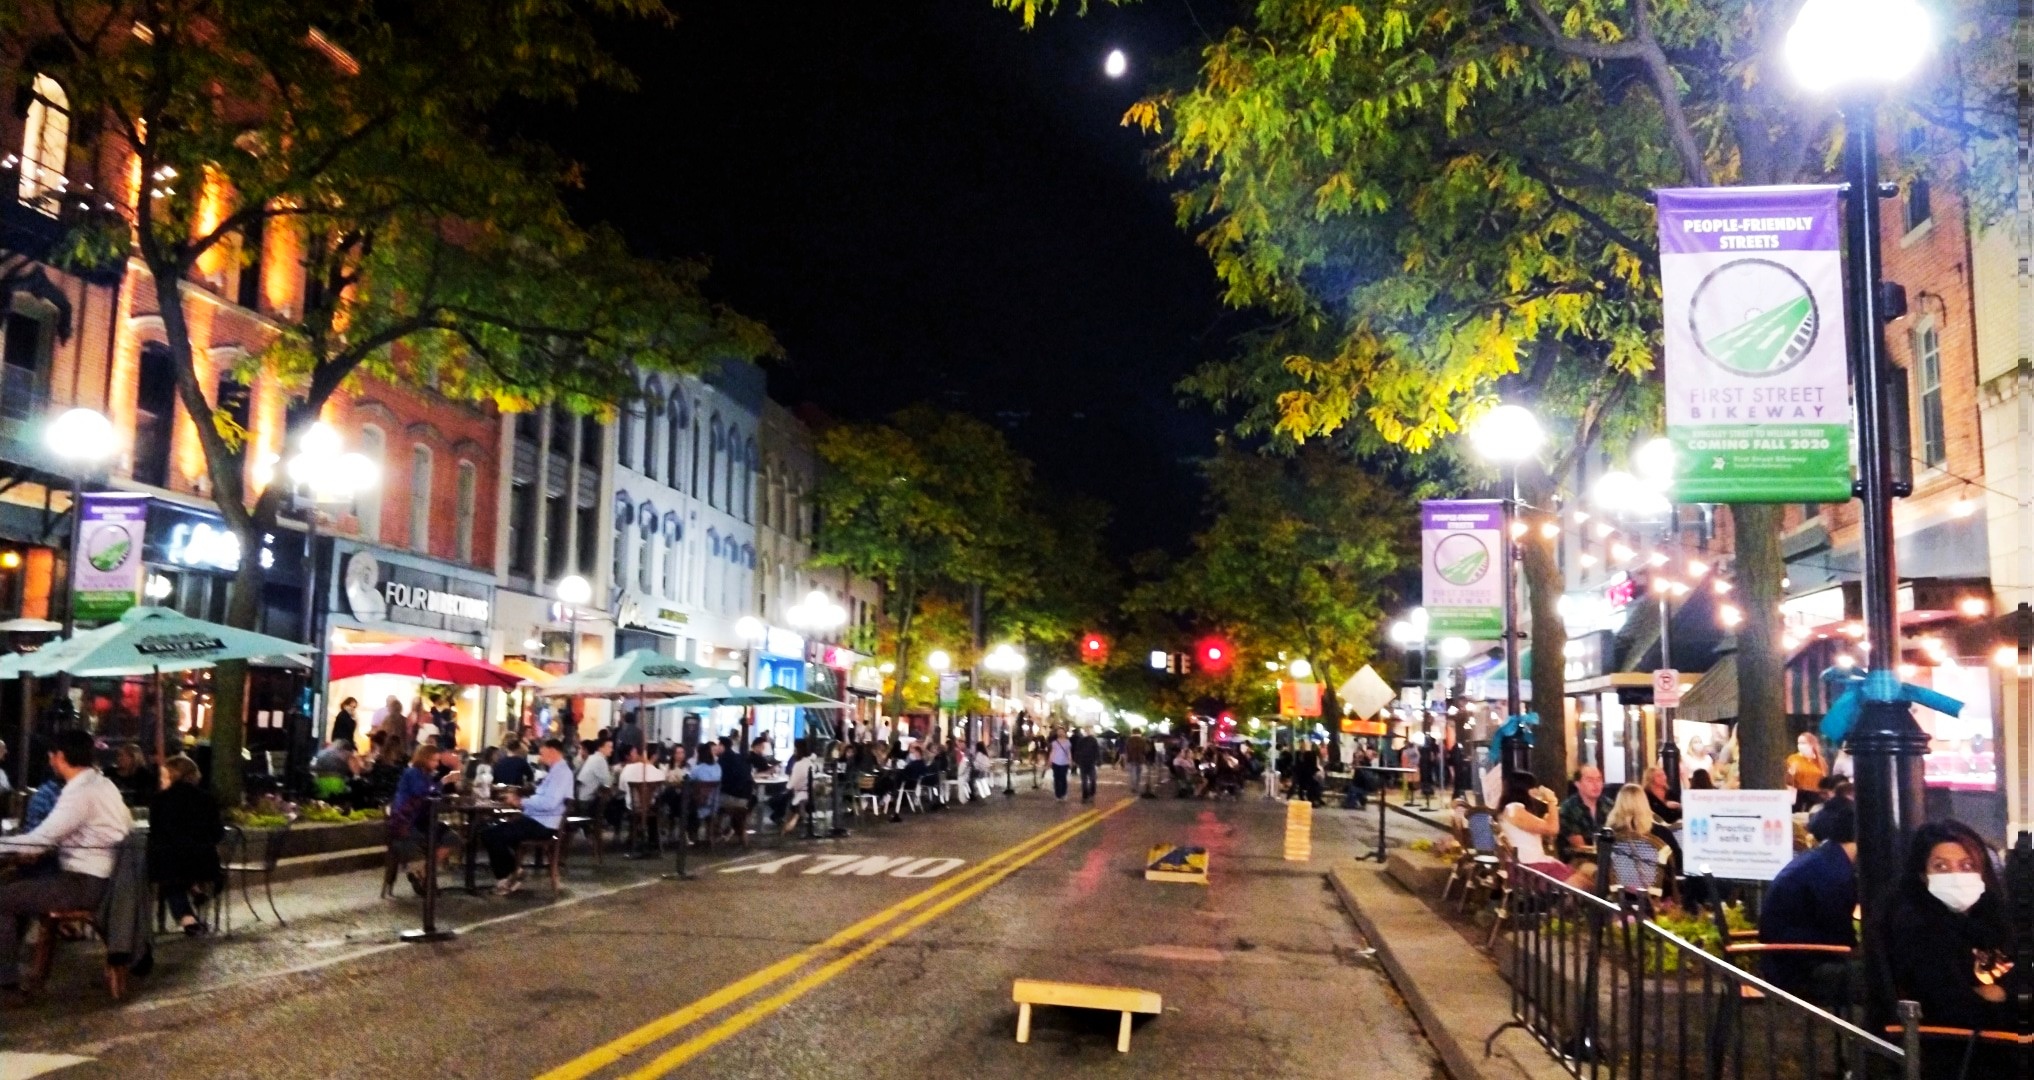 Main Street in downtown Ann Arbor